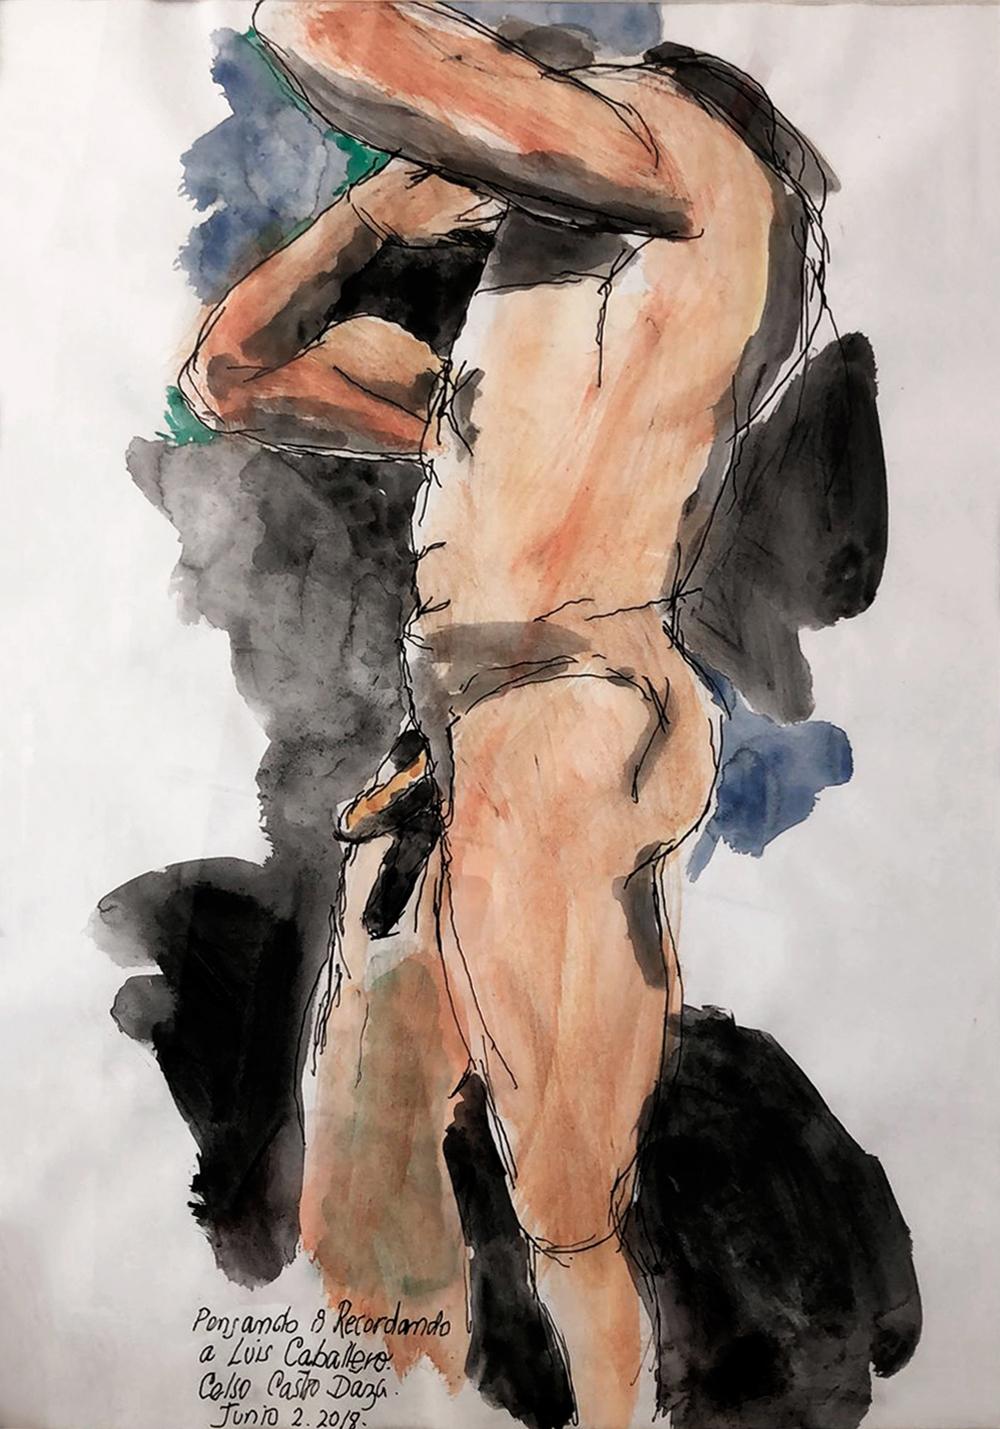 De la série Duchándome, Nudes. Ensemble de 4 aquarelles sur papier d'archives  - Art de Celso José Castro Daza